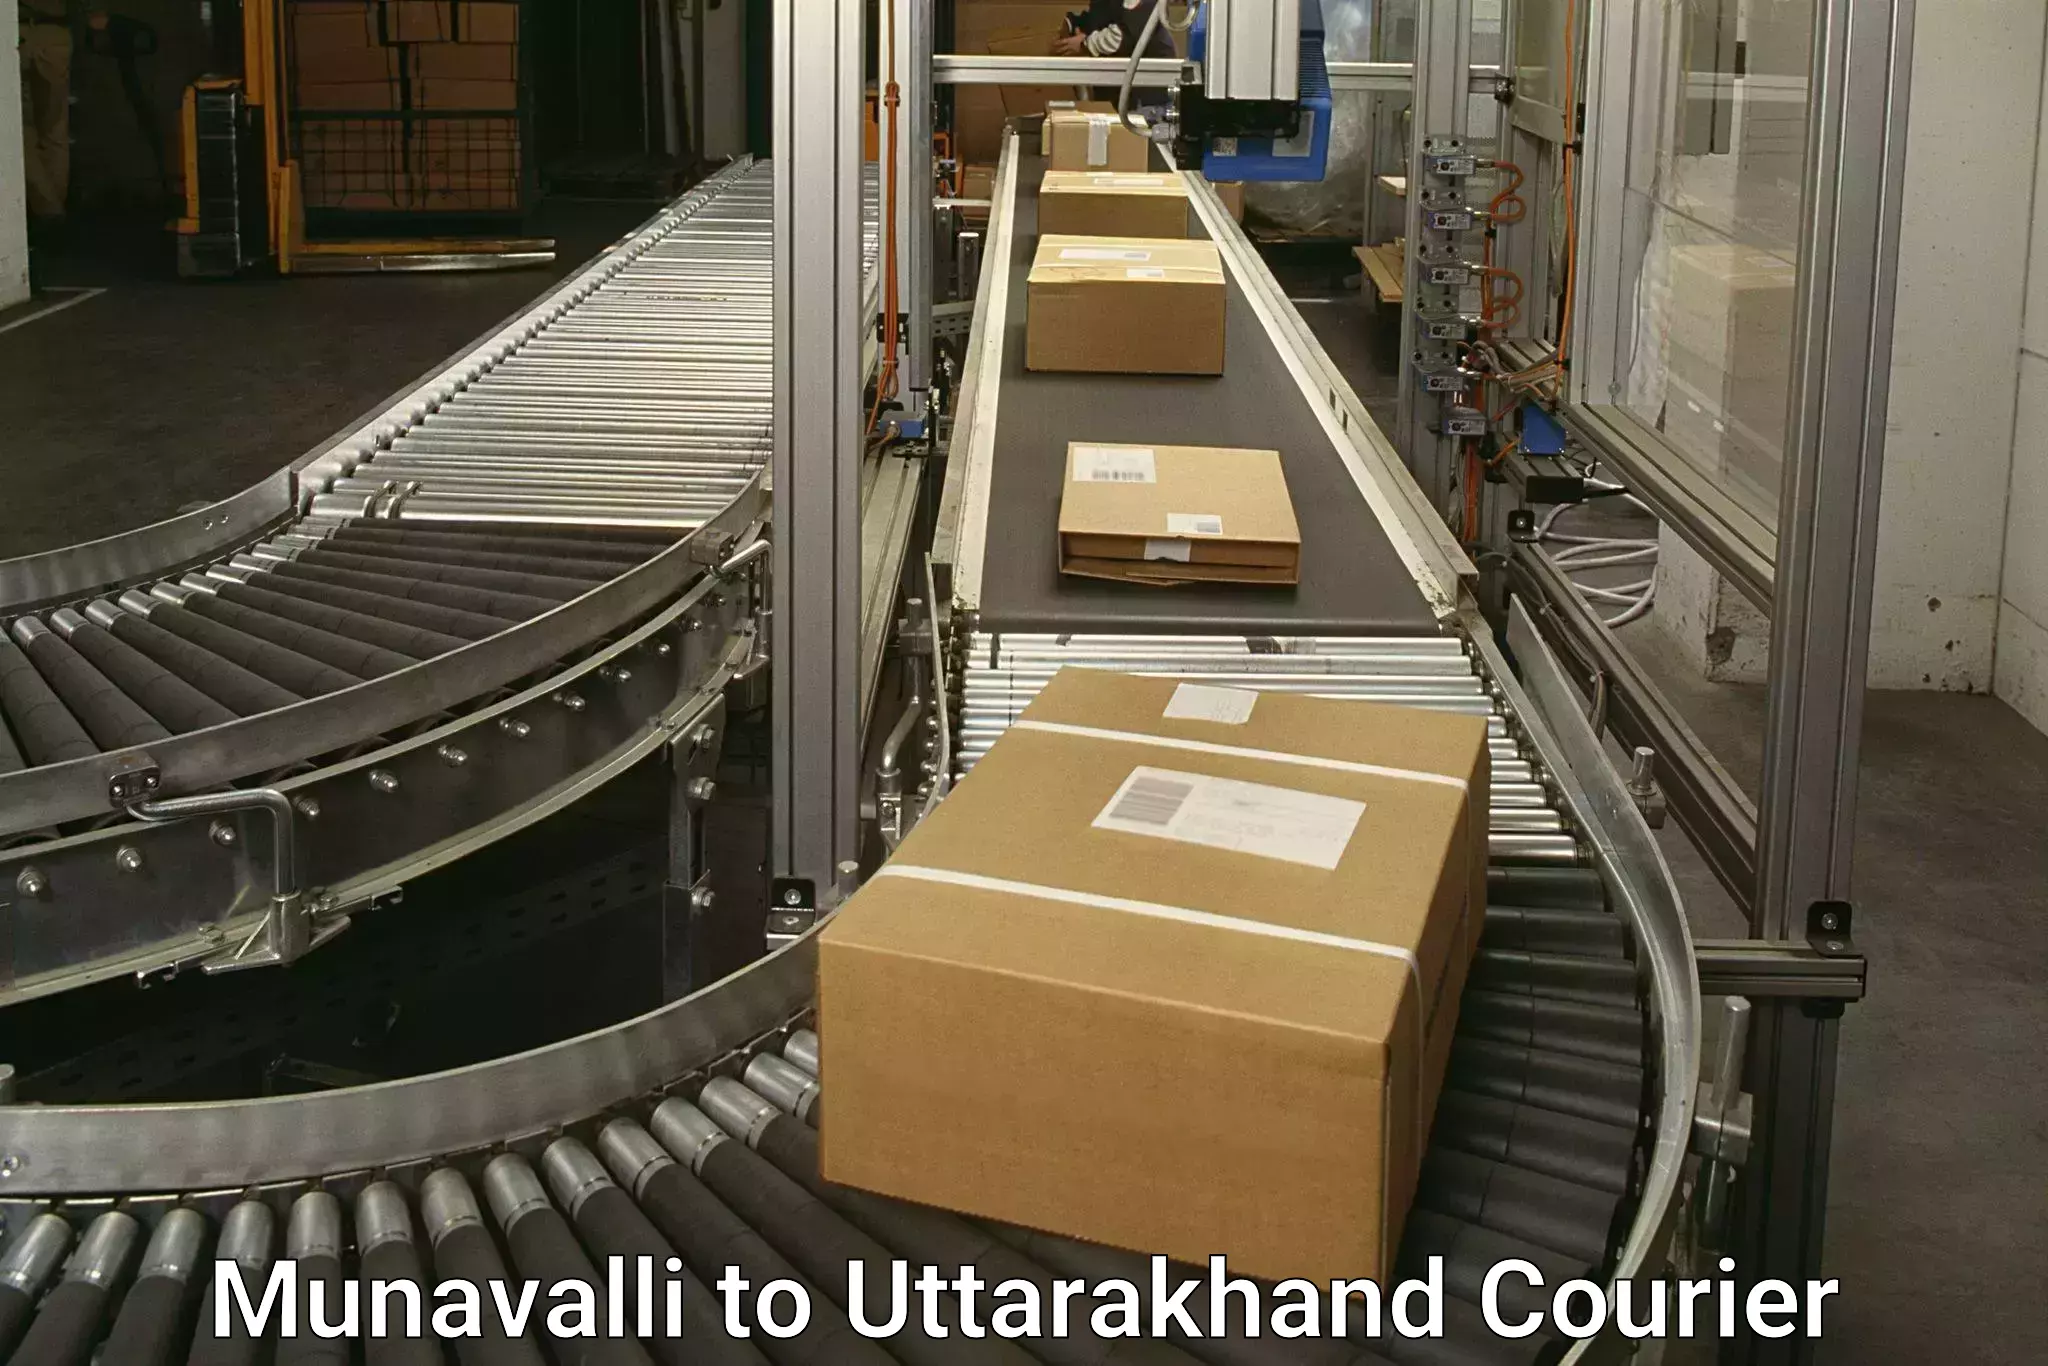 Next-generation courier services Munavalli to Uttarakhand